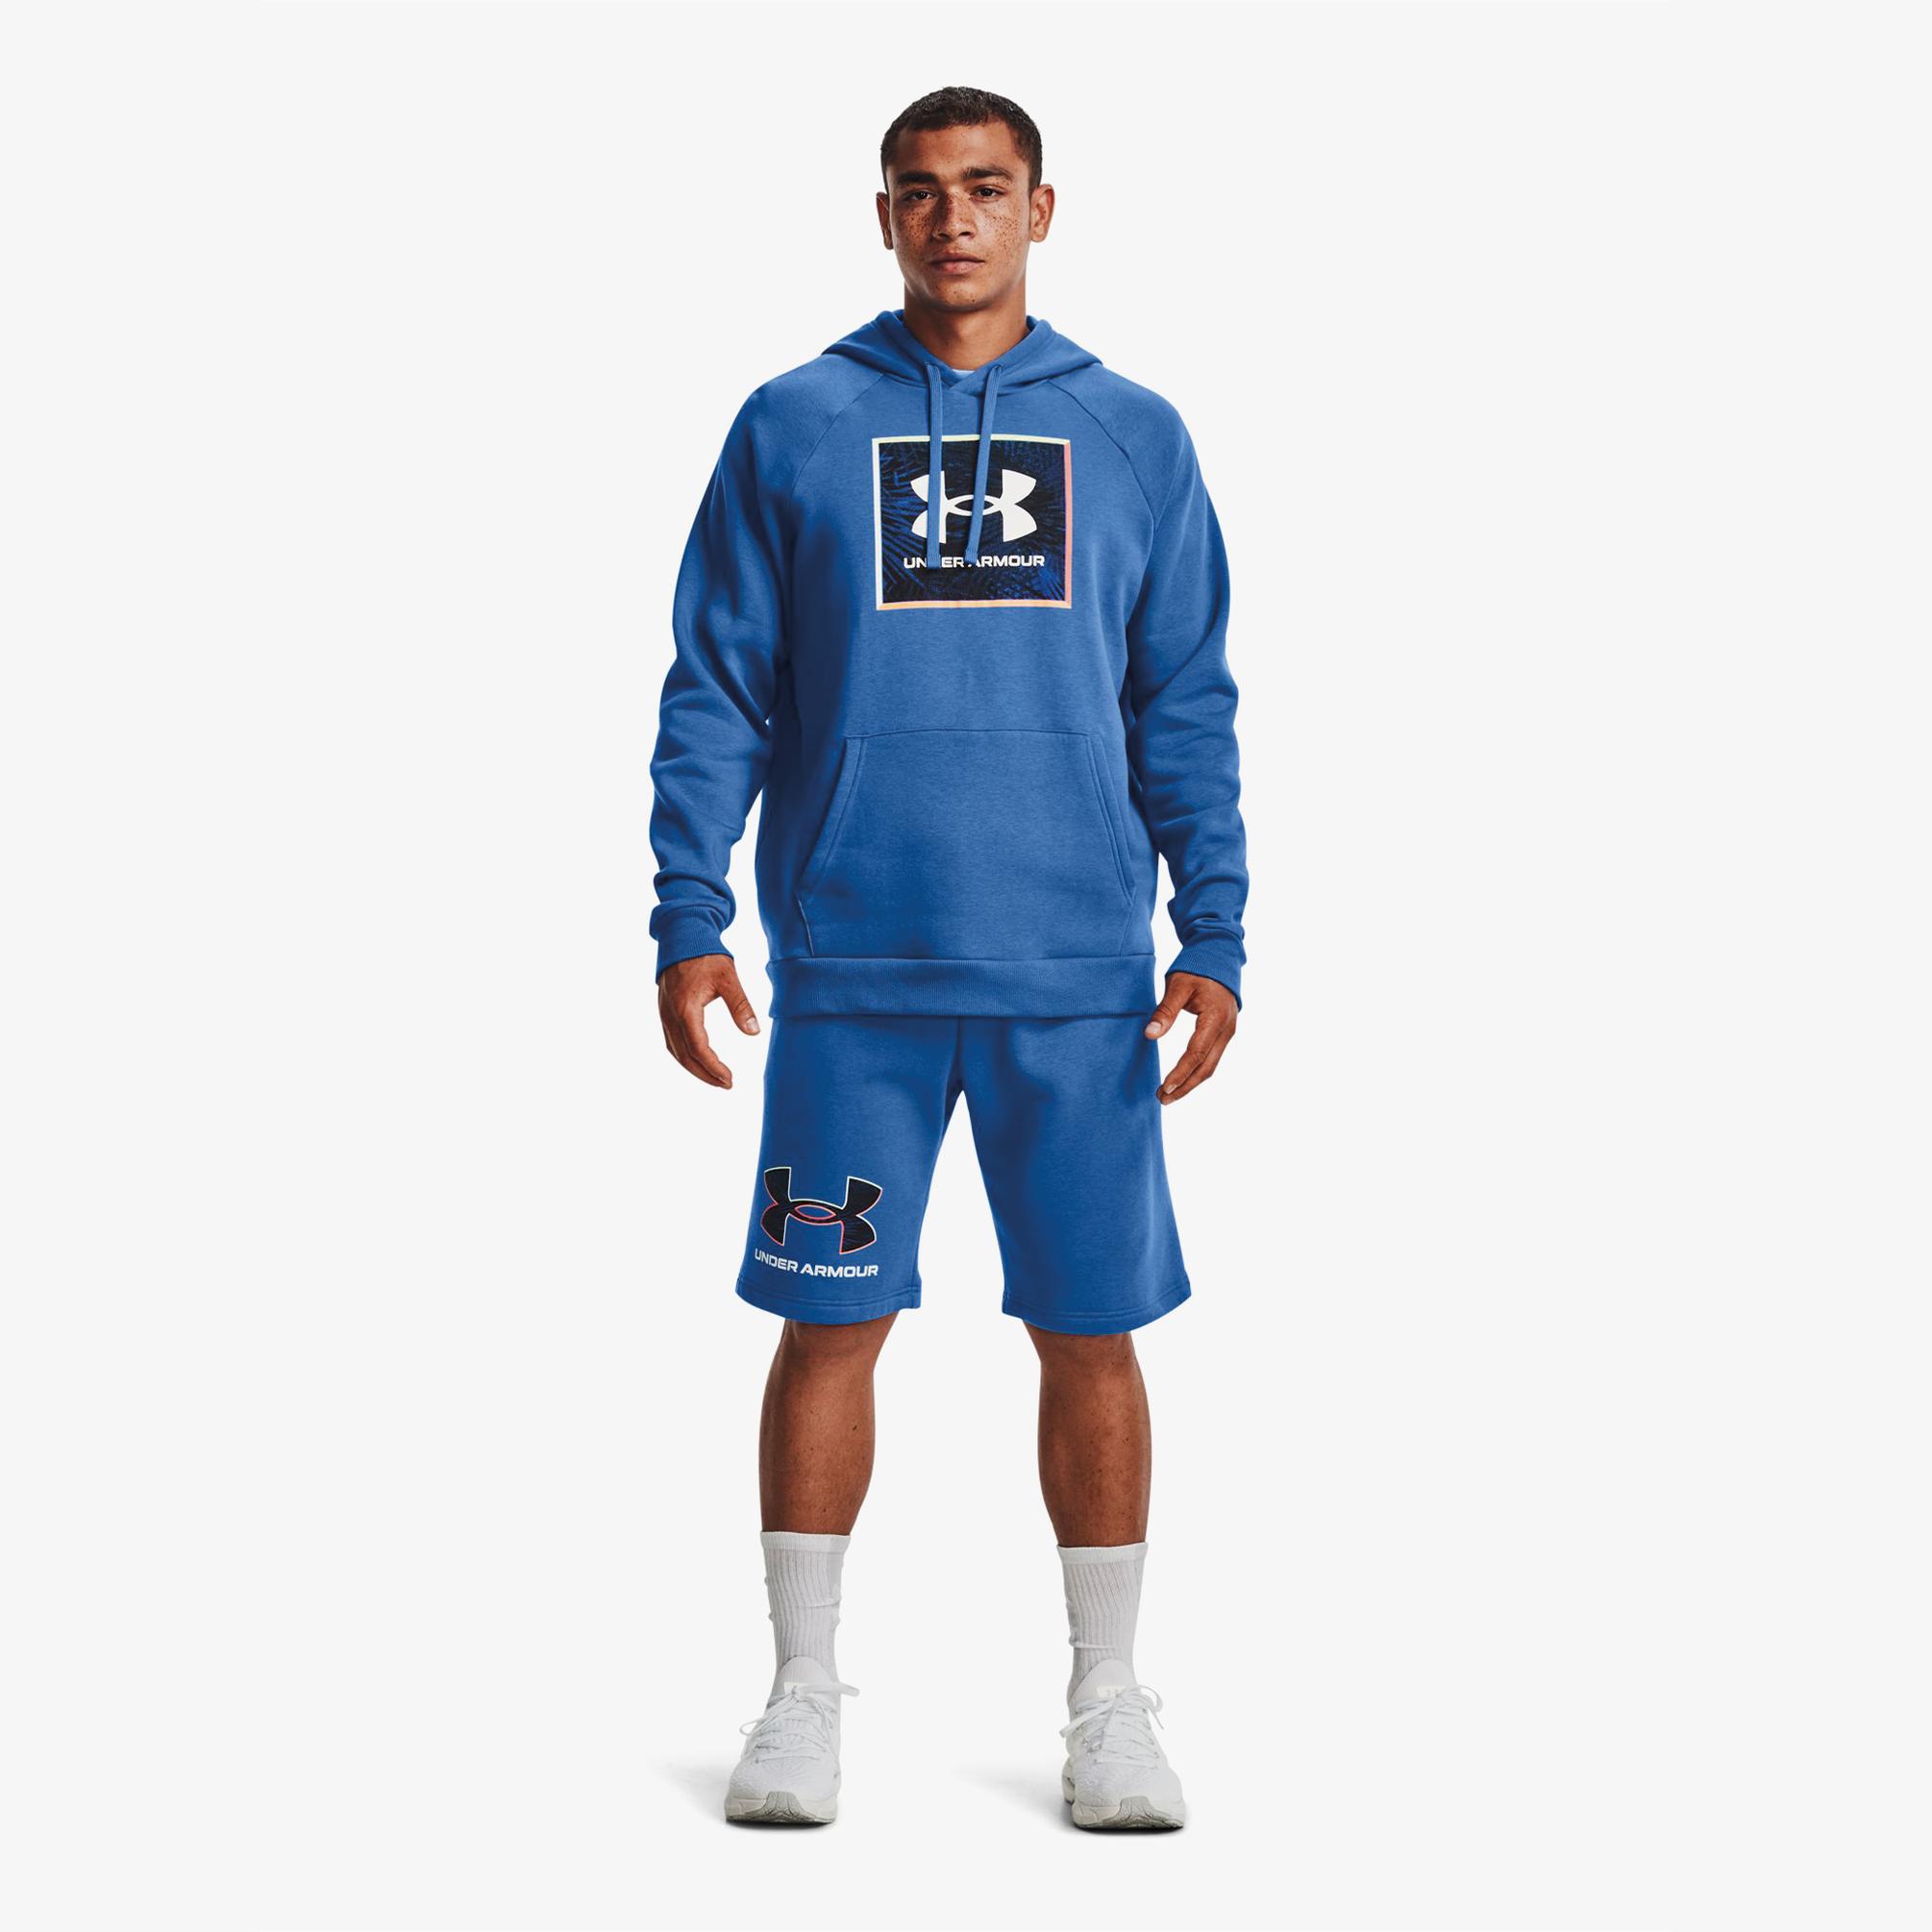  Under Armour Rival Fleece Graphic Erkek Mavi Kapüşonlu Sweatshirt